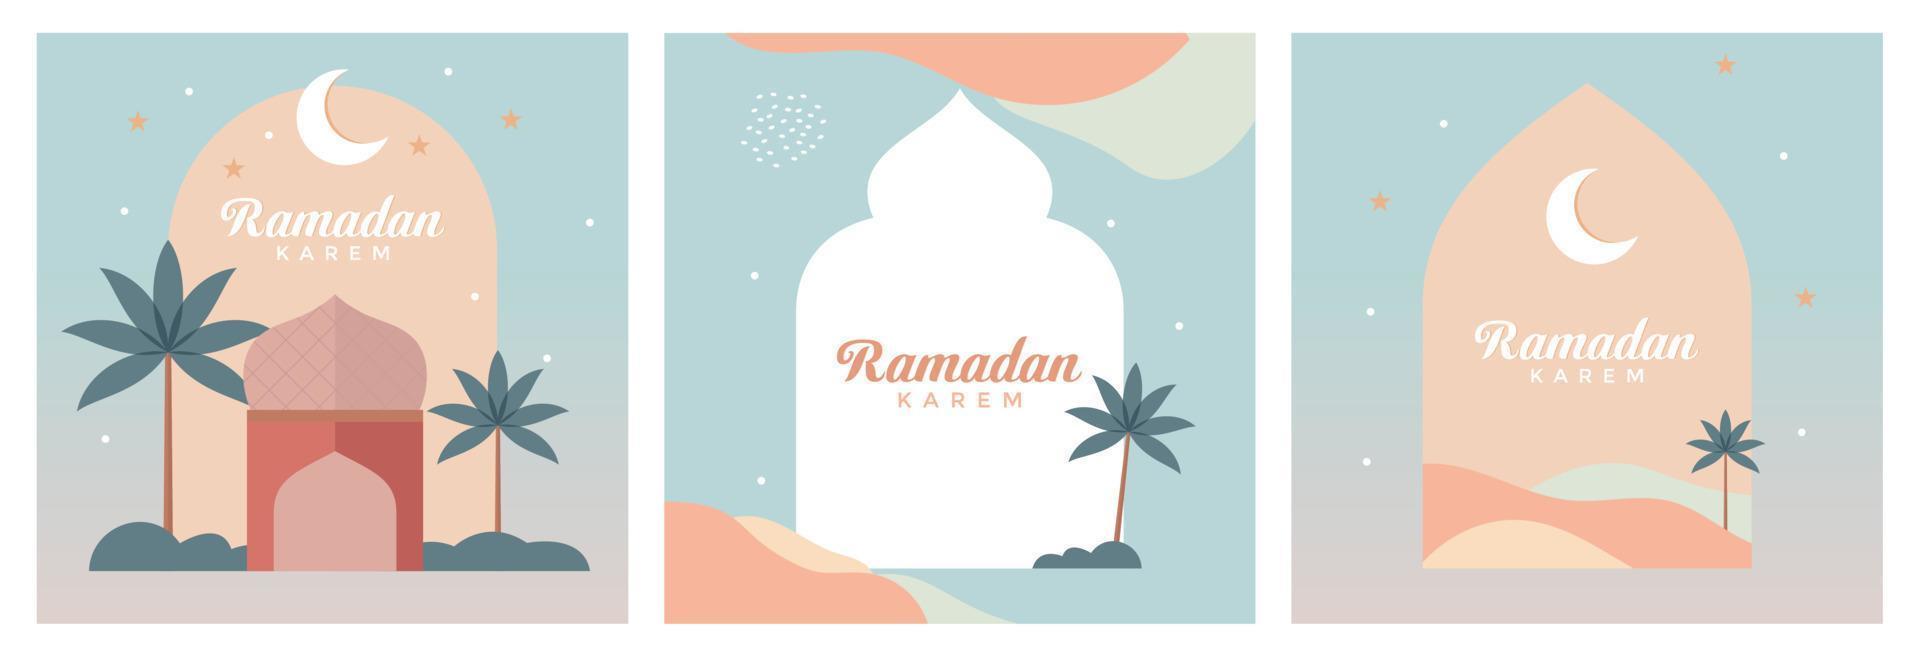 Ramadan kareem ensemble de modèles. conception moderne art style avec pastel couleurs. moderne magnifique conception avec mosquée, croissant lune, étoiles dans le ciel, arqué les fenêtres. affiches, couvertures, cartes, bannière. vecteur